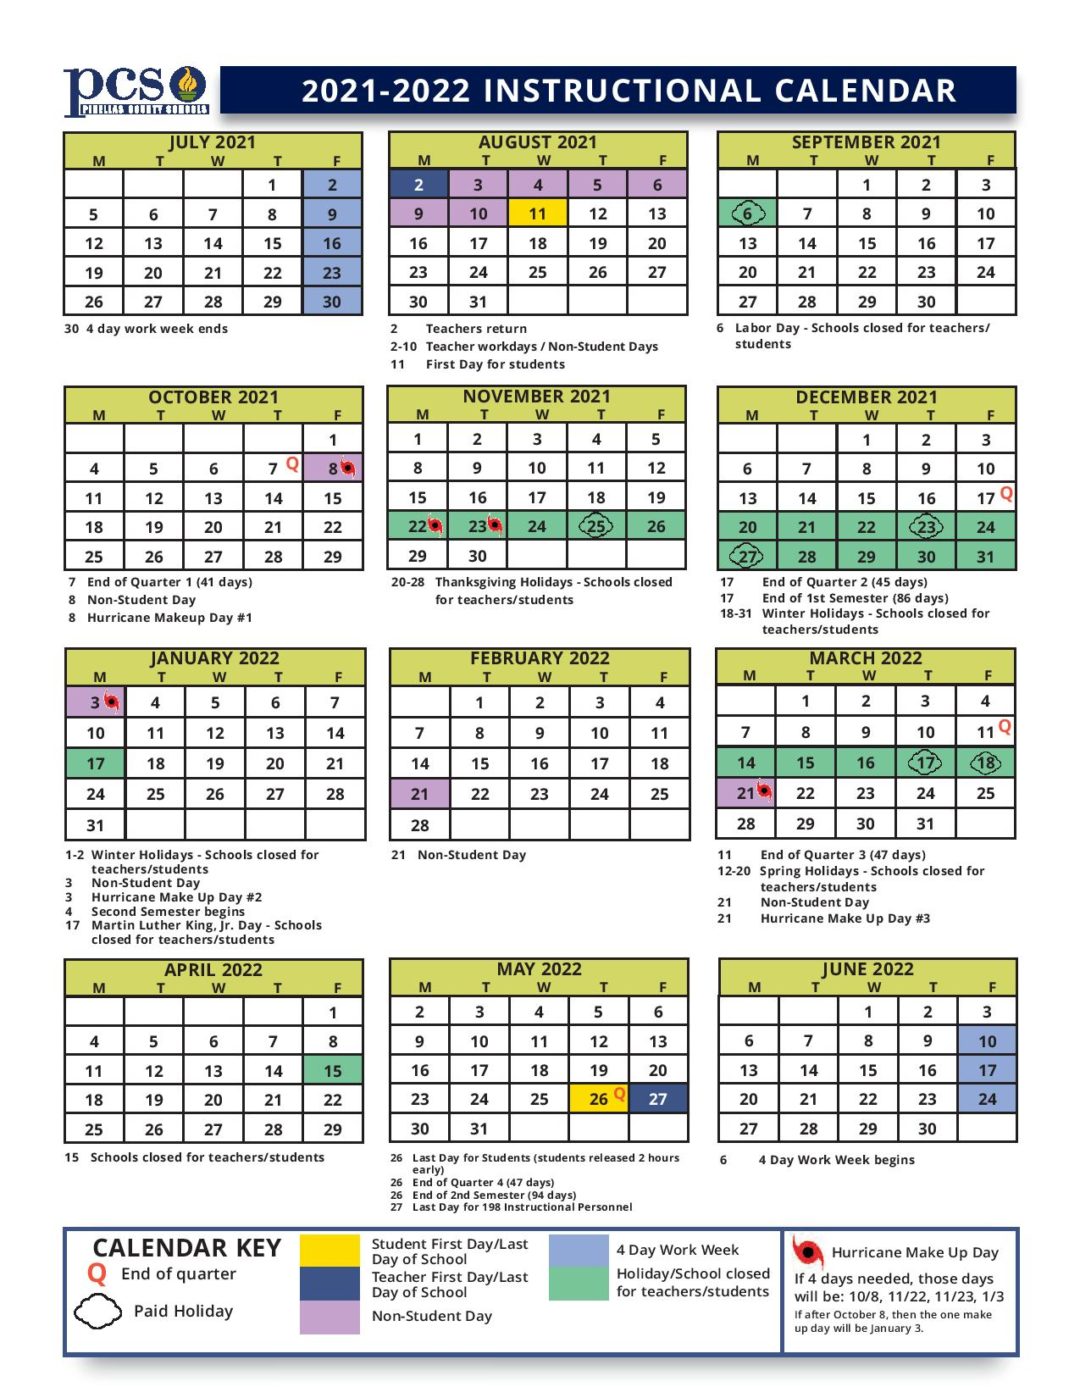 Pinellas County Schools Calendar 20212022 in PDF Format